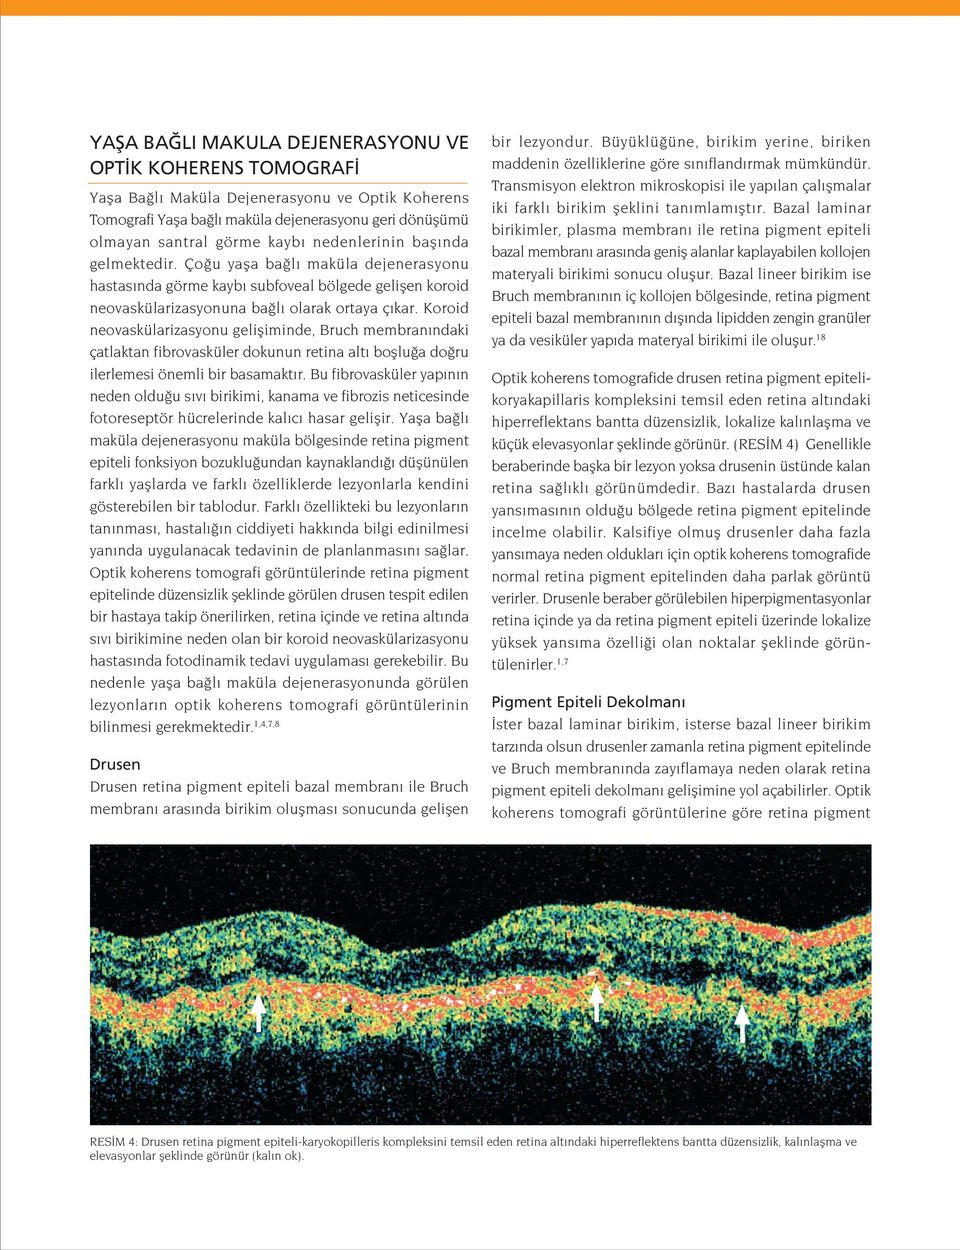 Koroid neovaskülarizasyonu gelifliminde, Bruch membran ndaki çatlaktan fibrovasküler dokunun retina alt bofllu a do ru ilerlemesi önemli bir basamakt r.